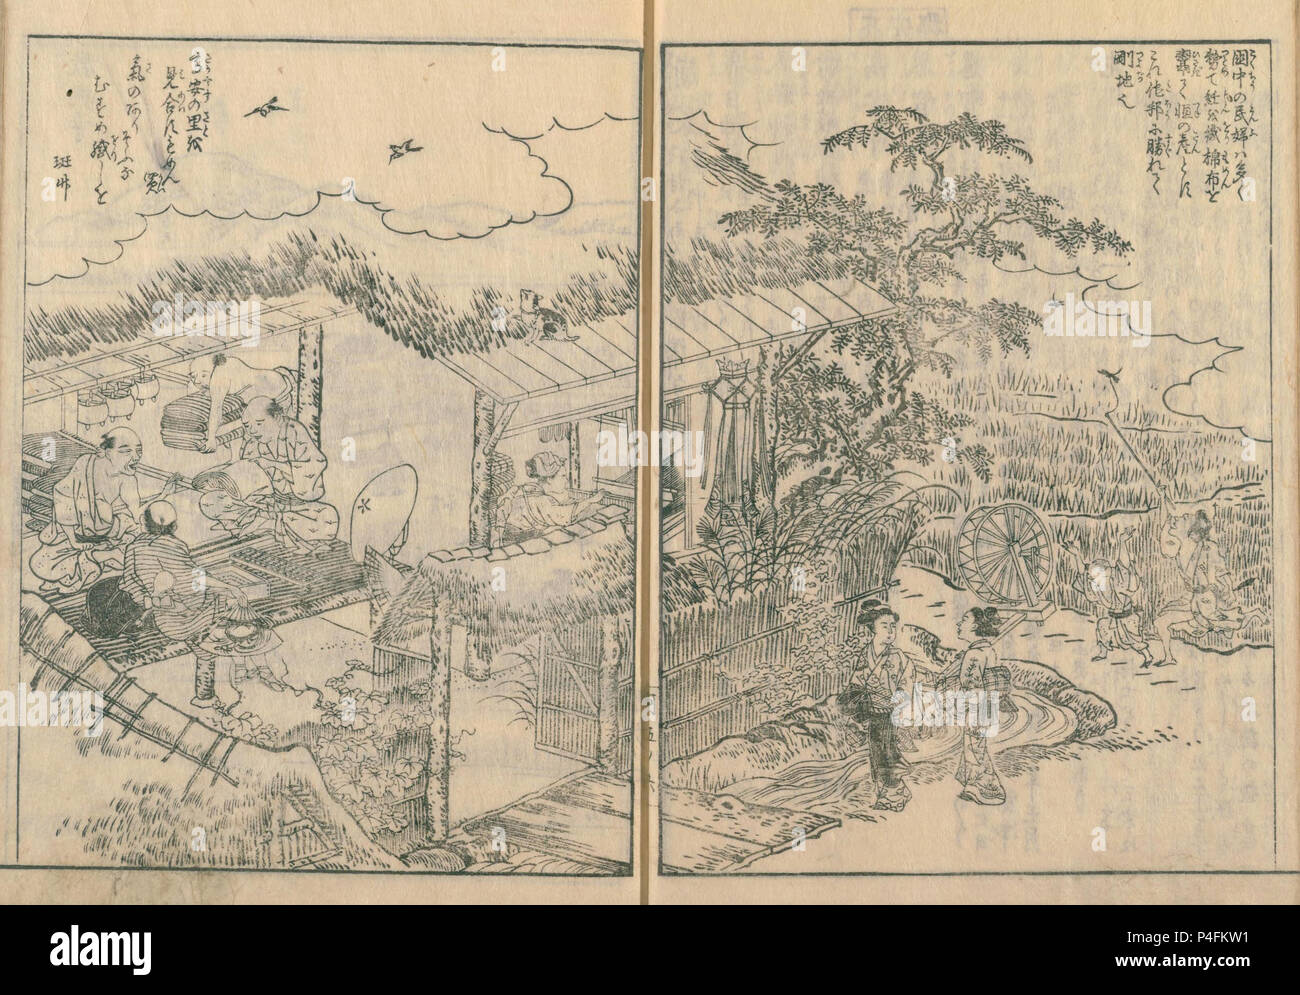 Agriculteur produisant du coton, illustration de Kawachi meisho zue, publié en 1801, Collection privée. Banque D'Images